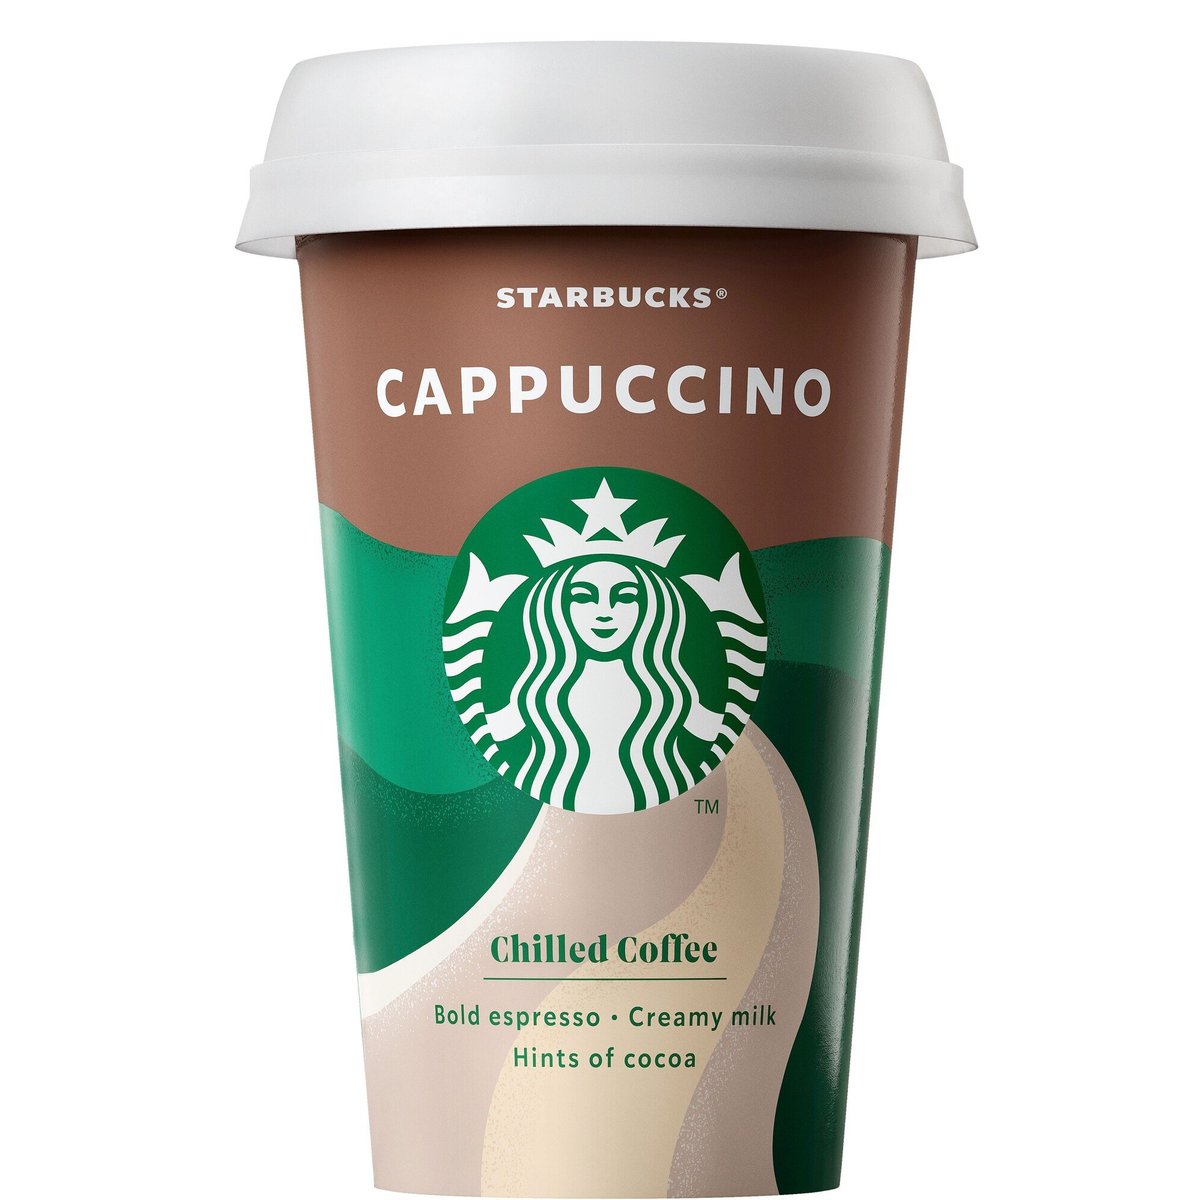 Starbucks Cappuccino